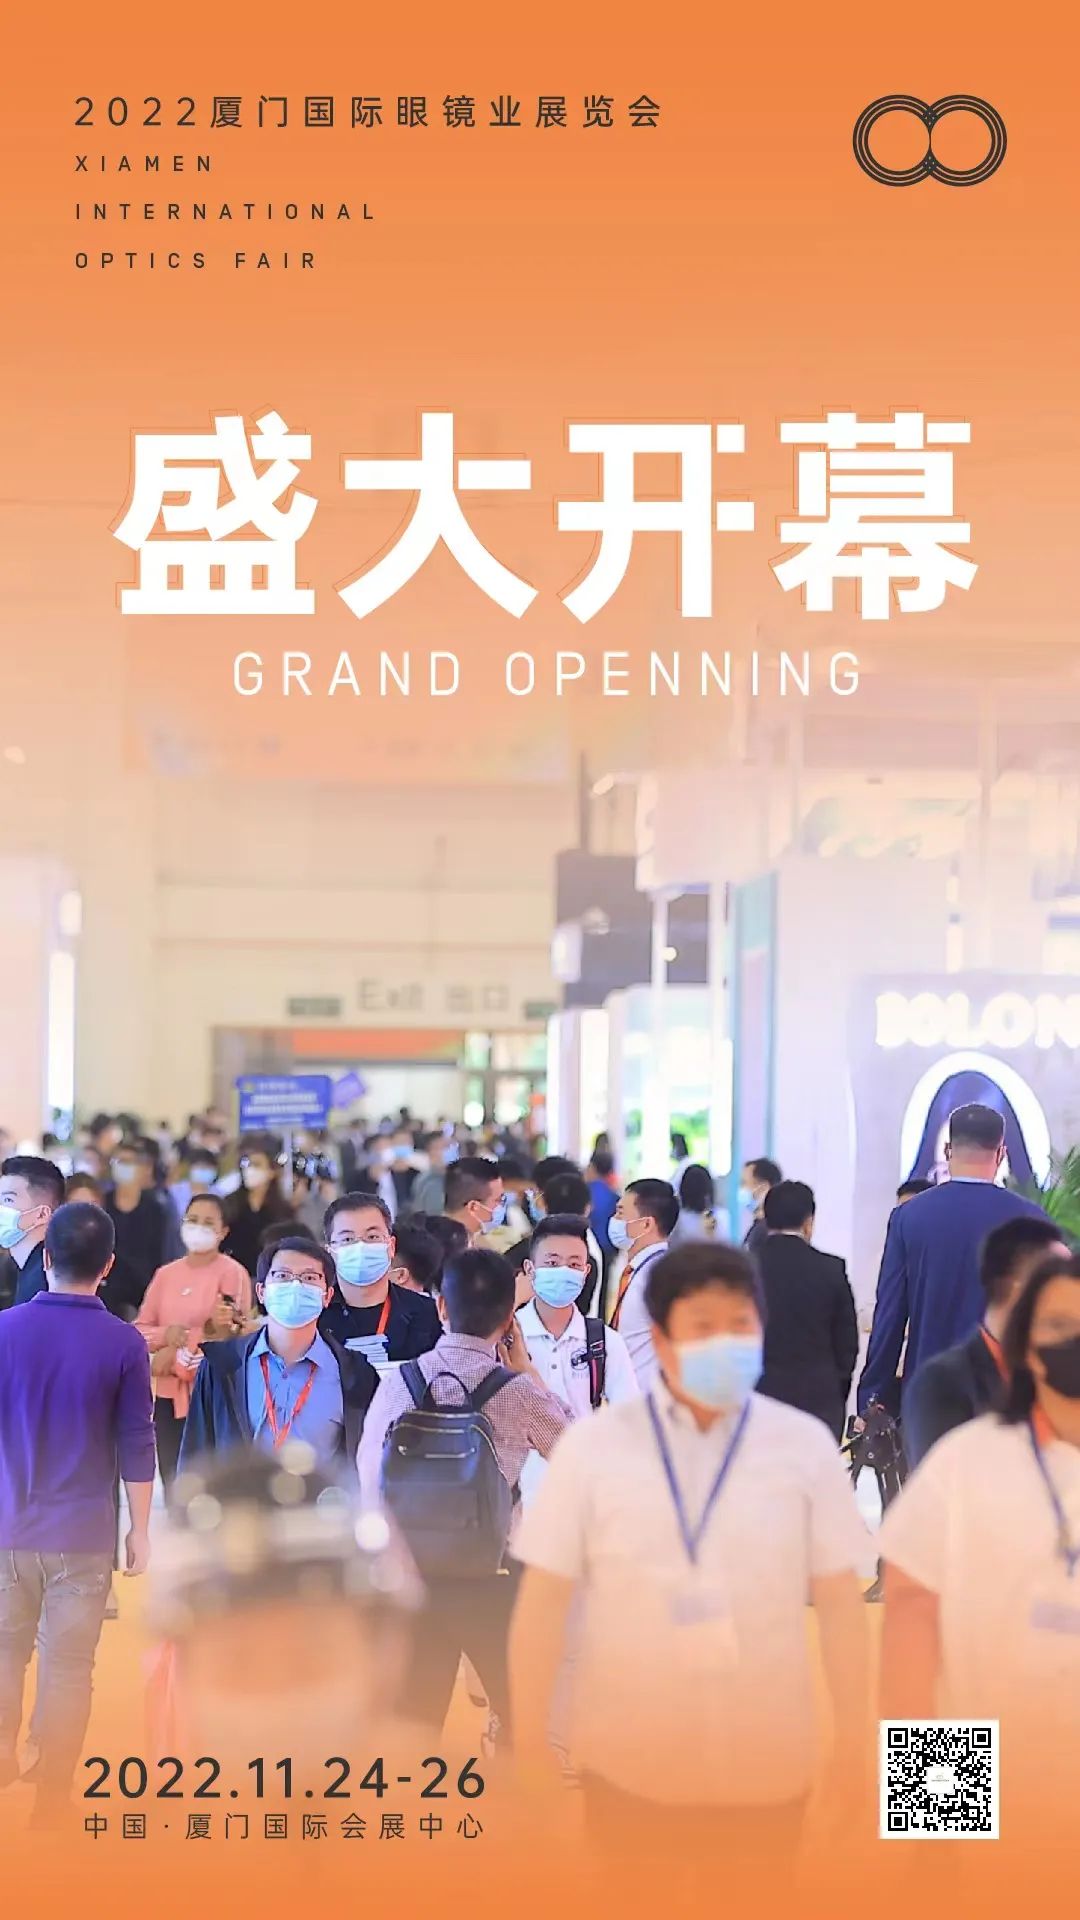 A Feira Internacional de Óptica de Xiamen 2022 abre hoje!